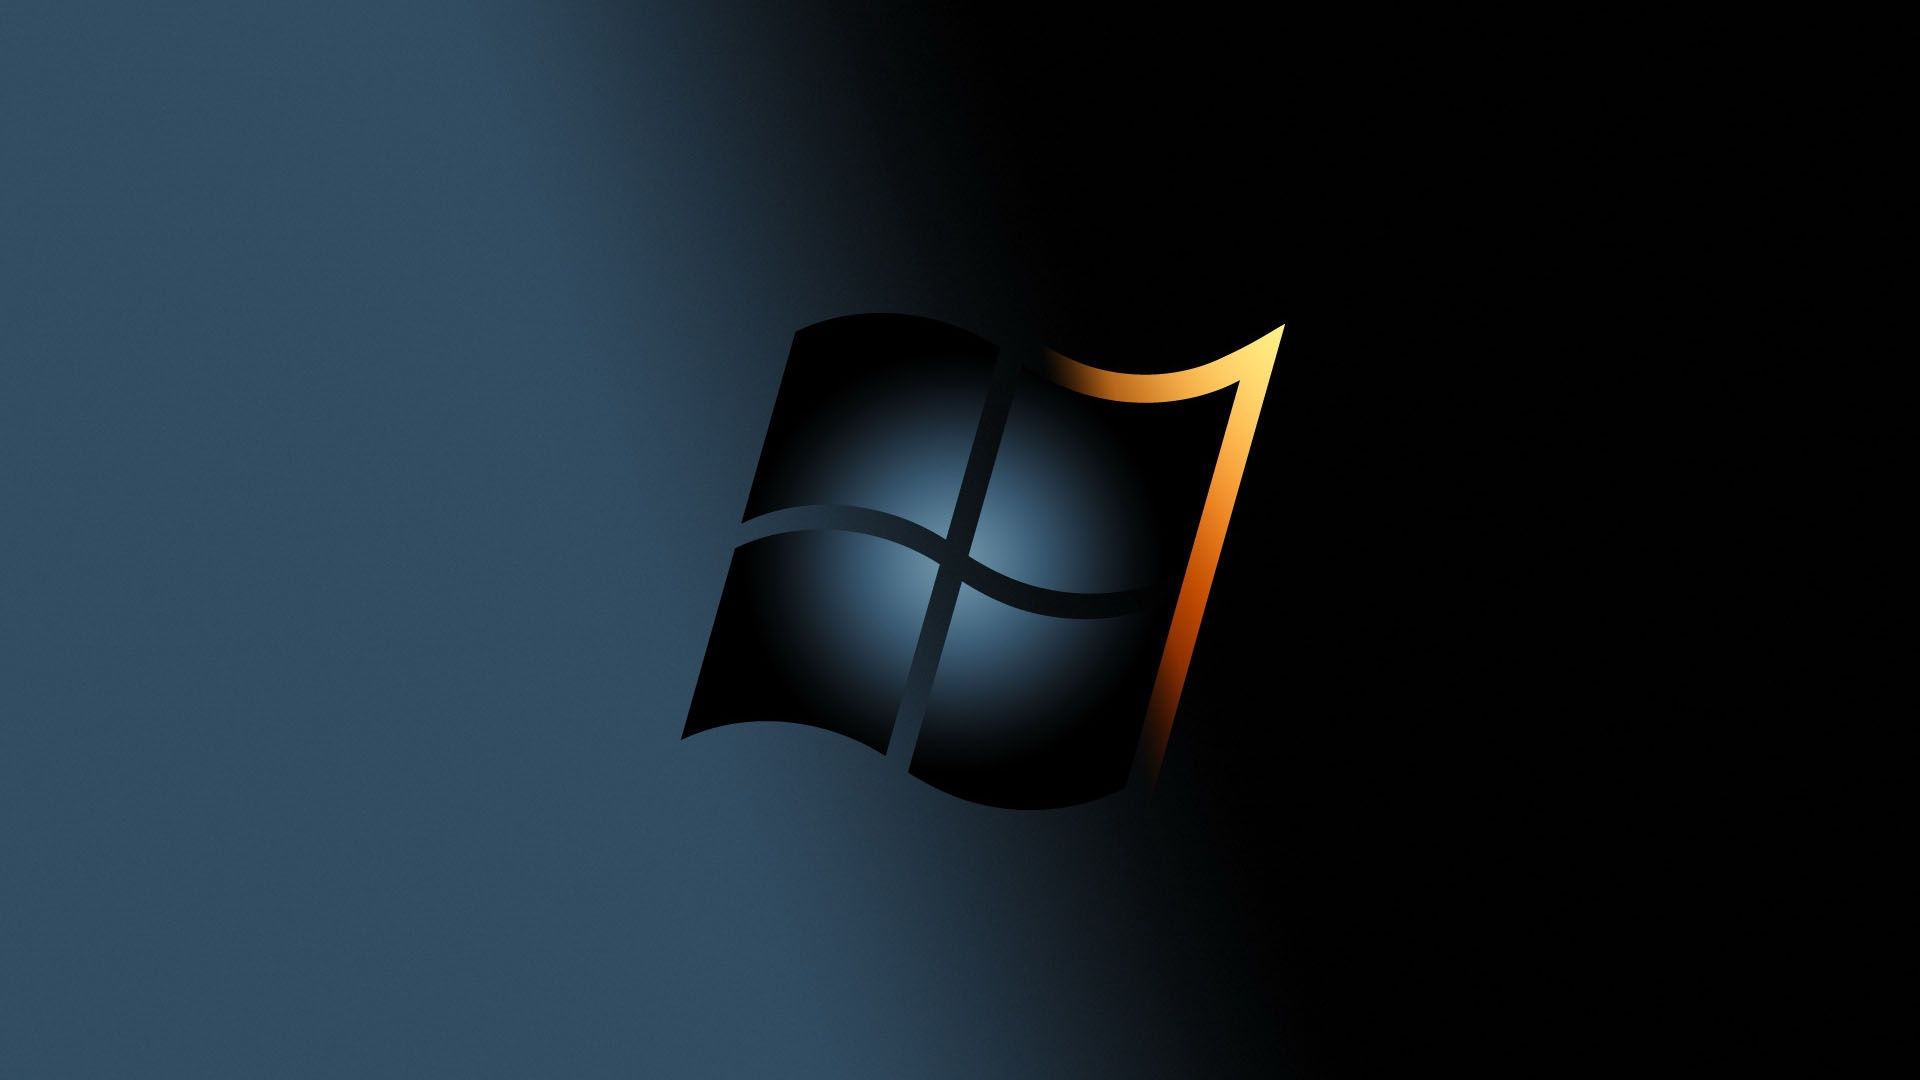 Hình nền máy tính Windows 7 miễn phí SF là bộ sưu tập hoàn hảo để cập nhật vẻ ngoài của máy tính của bạn. Tất cả các bức hình trong SF đều được cập nhật liên tục và đảm bảo mang đến cho bạn sự đẹp đẽ và ấn tượng.